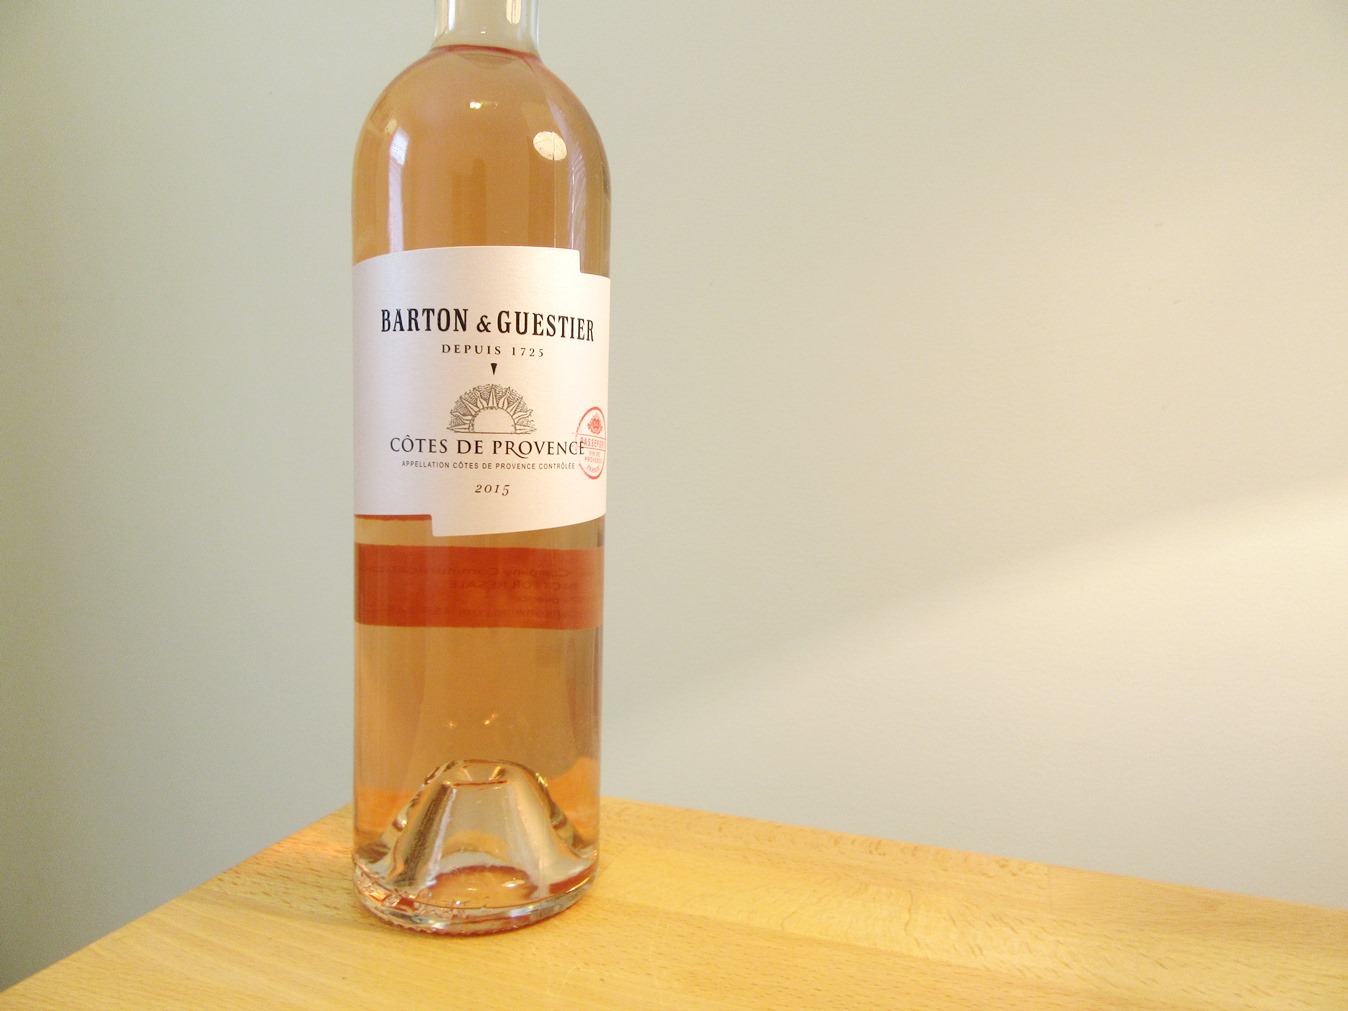 Barton & Guestier, Passeport Cotes de Provence Rosé 2015, Provence, France, Wine Casual